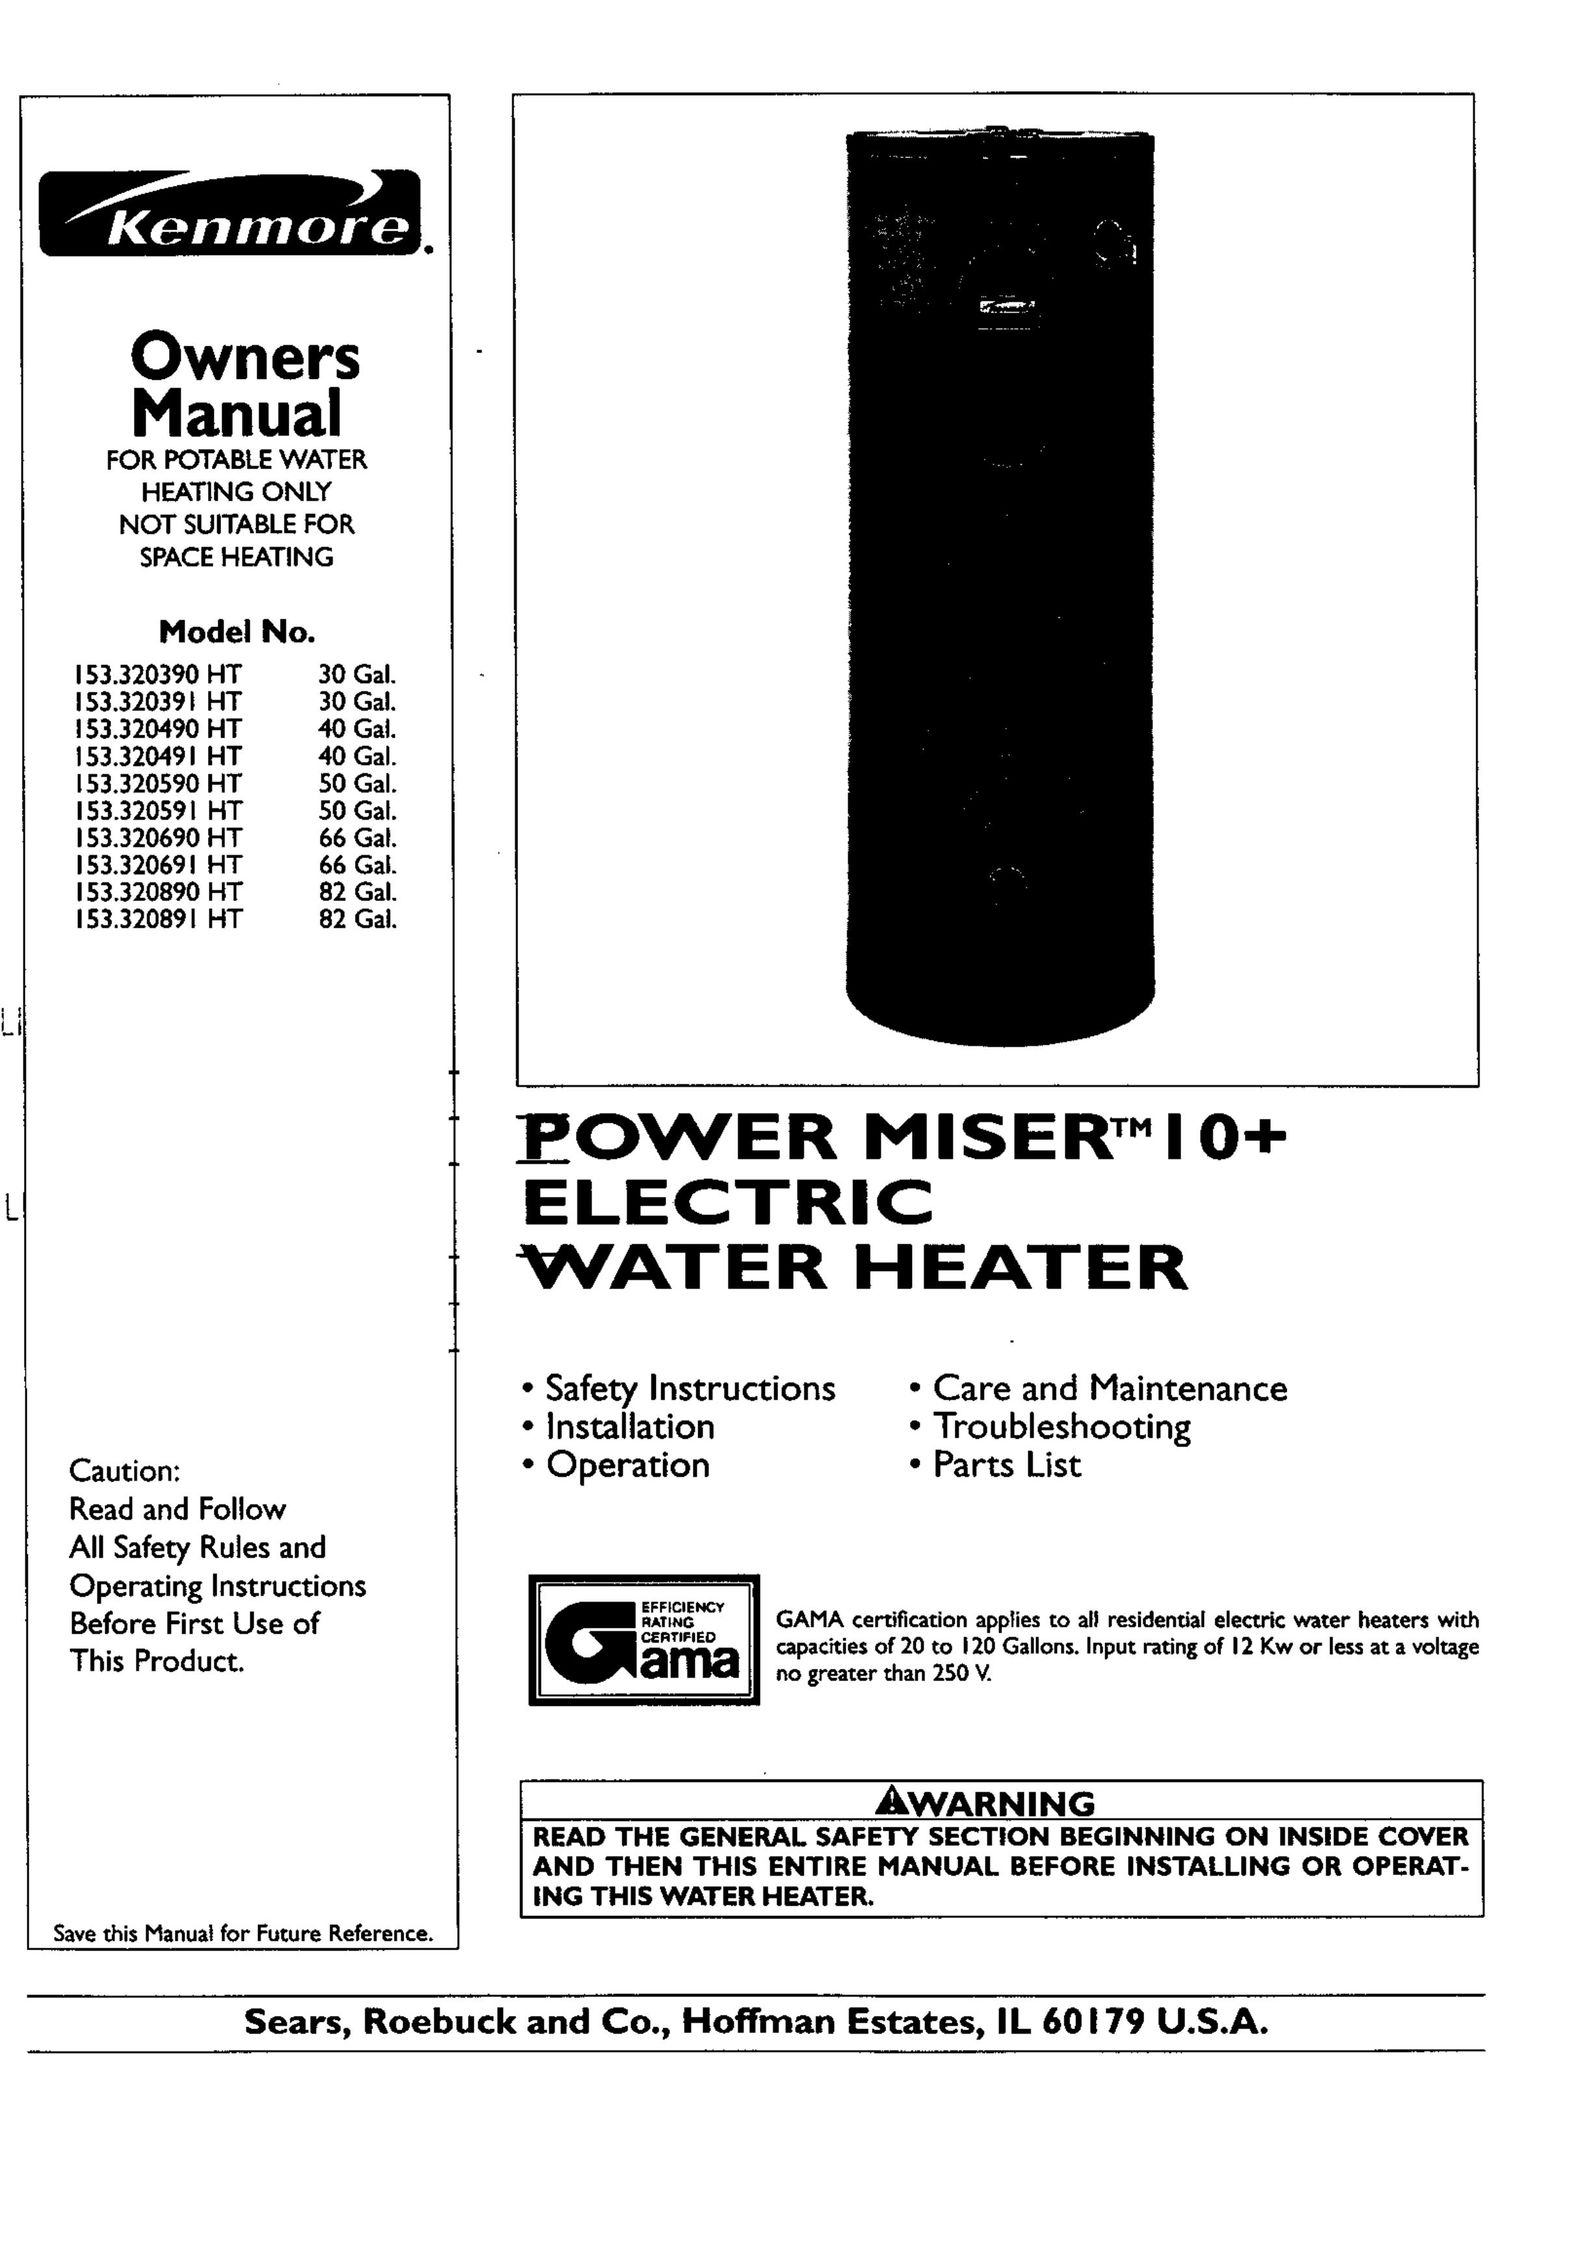 Kenmore 153.320490 HT 40 GAL Water Heater User Manual